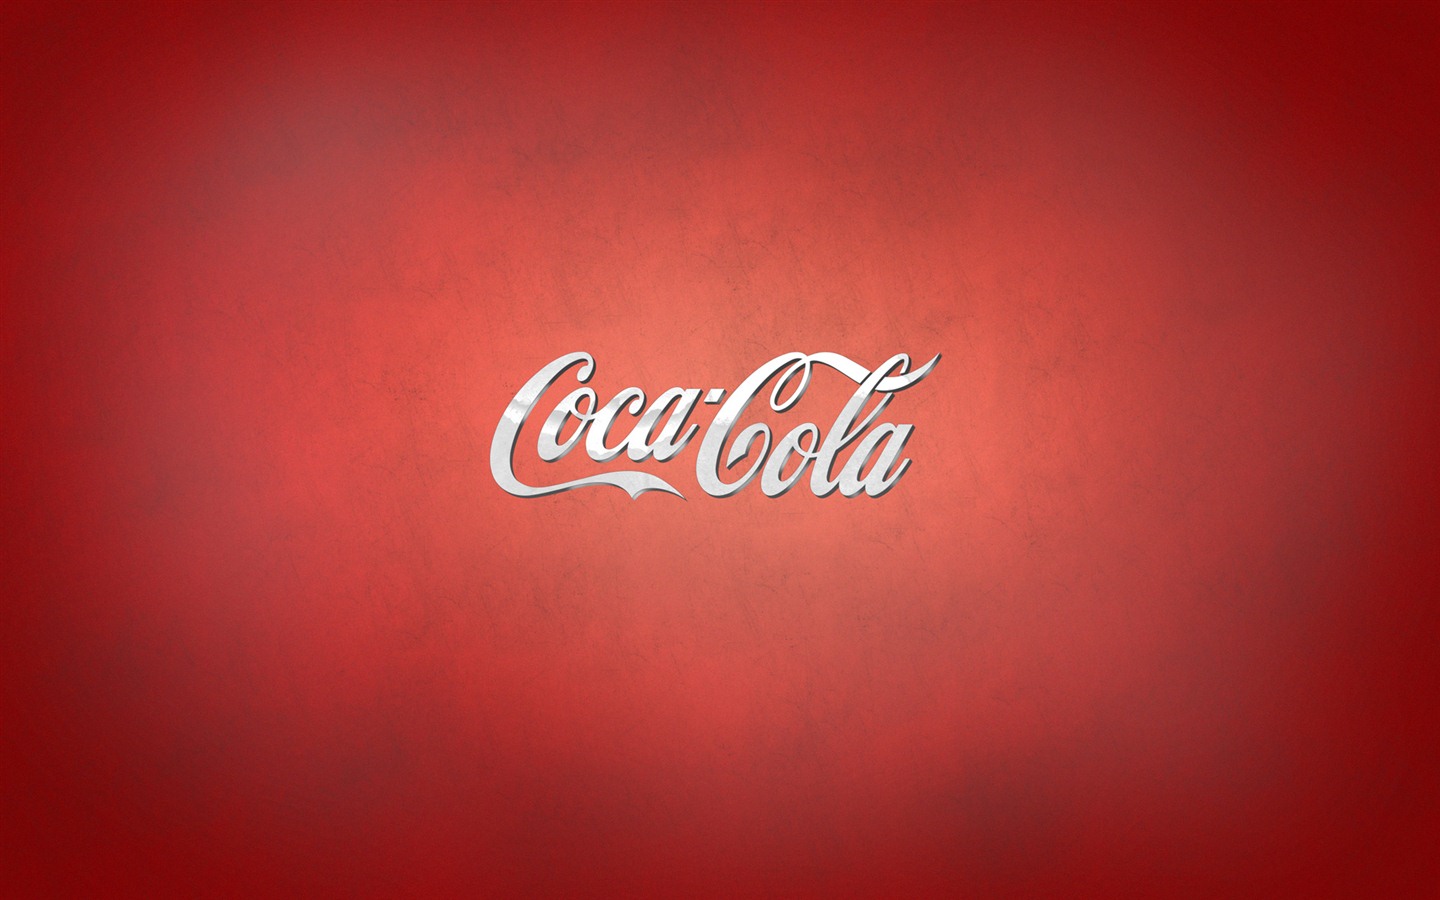 Coca-Cola beautiful ad wallpaper #16 - 1440x900